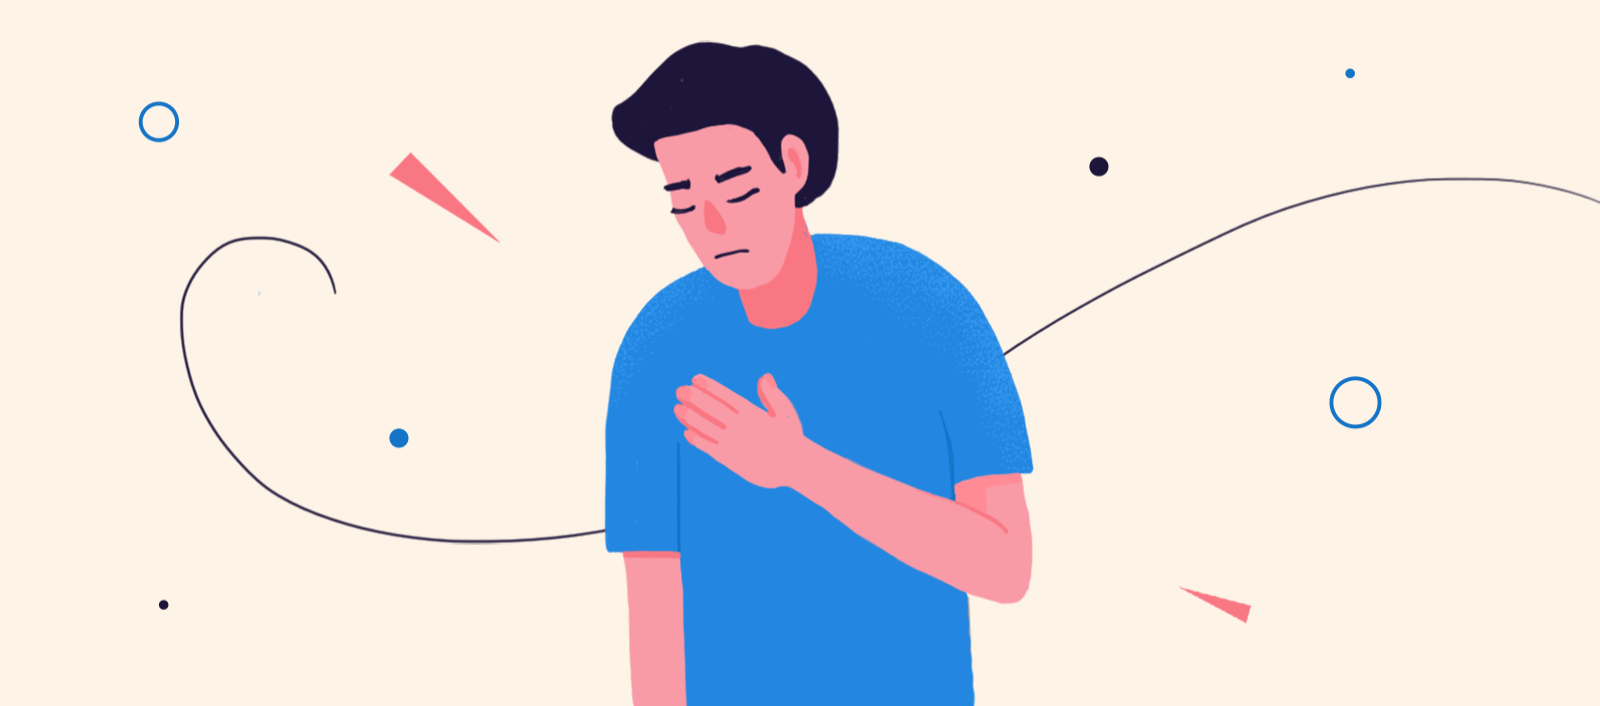 焦虑可能会导致你的胸部压力